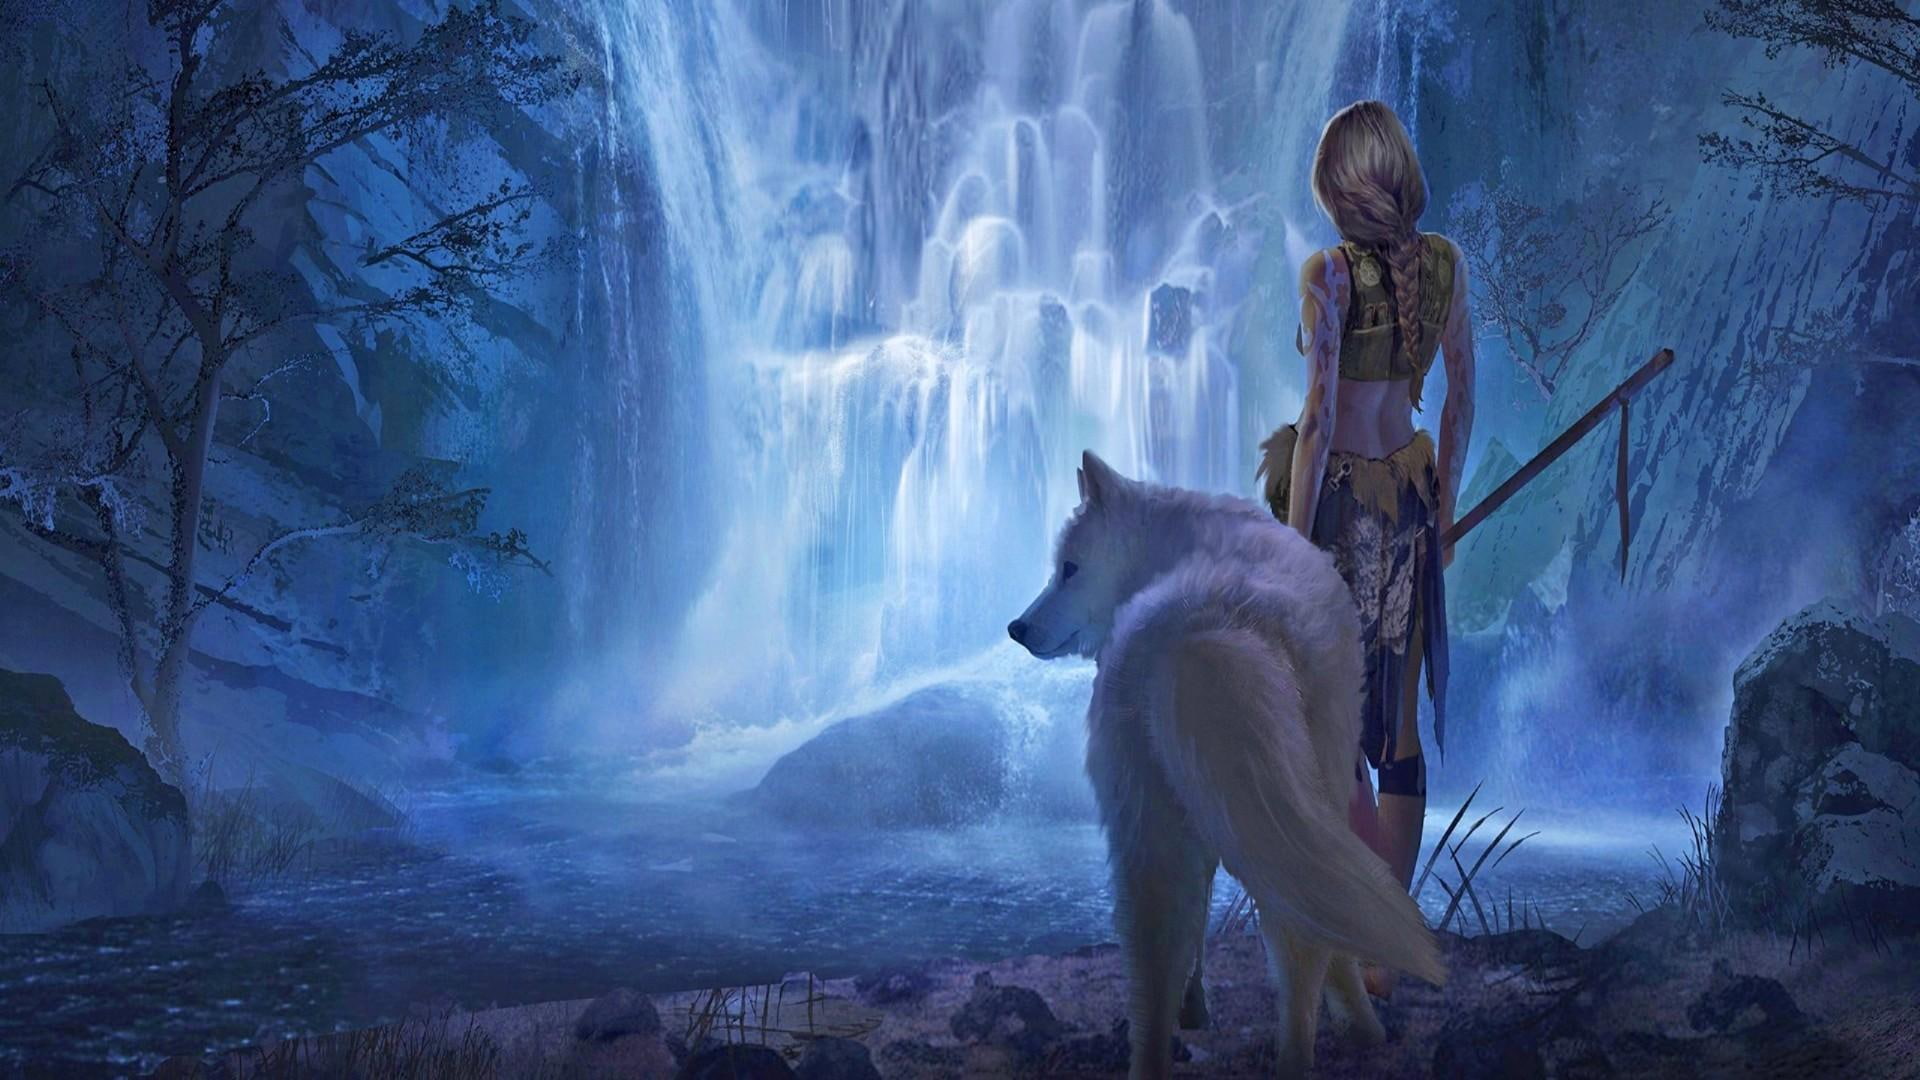 white wolf, fantasy art, waterfall, bluish, nature, fictional character